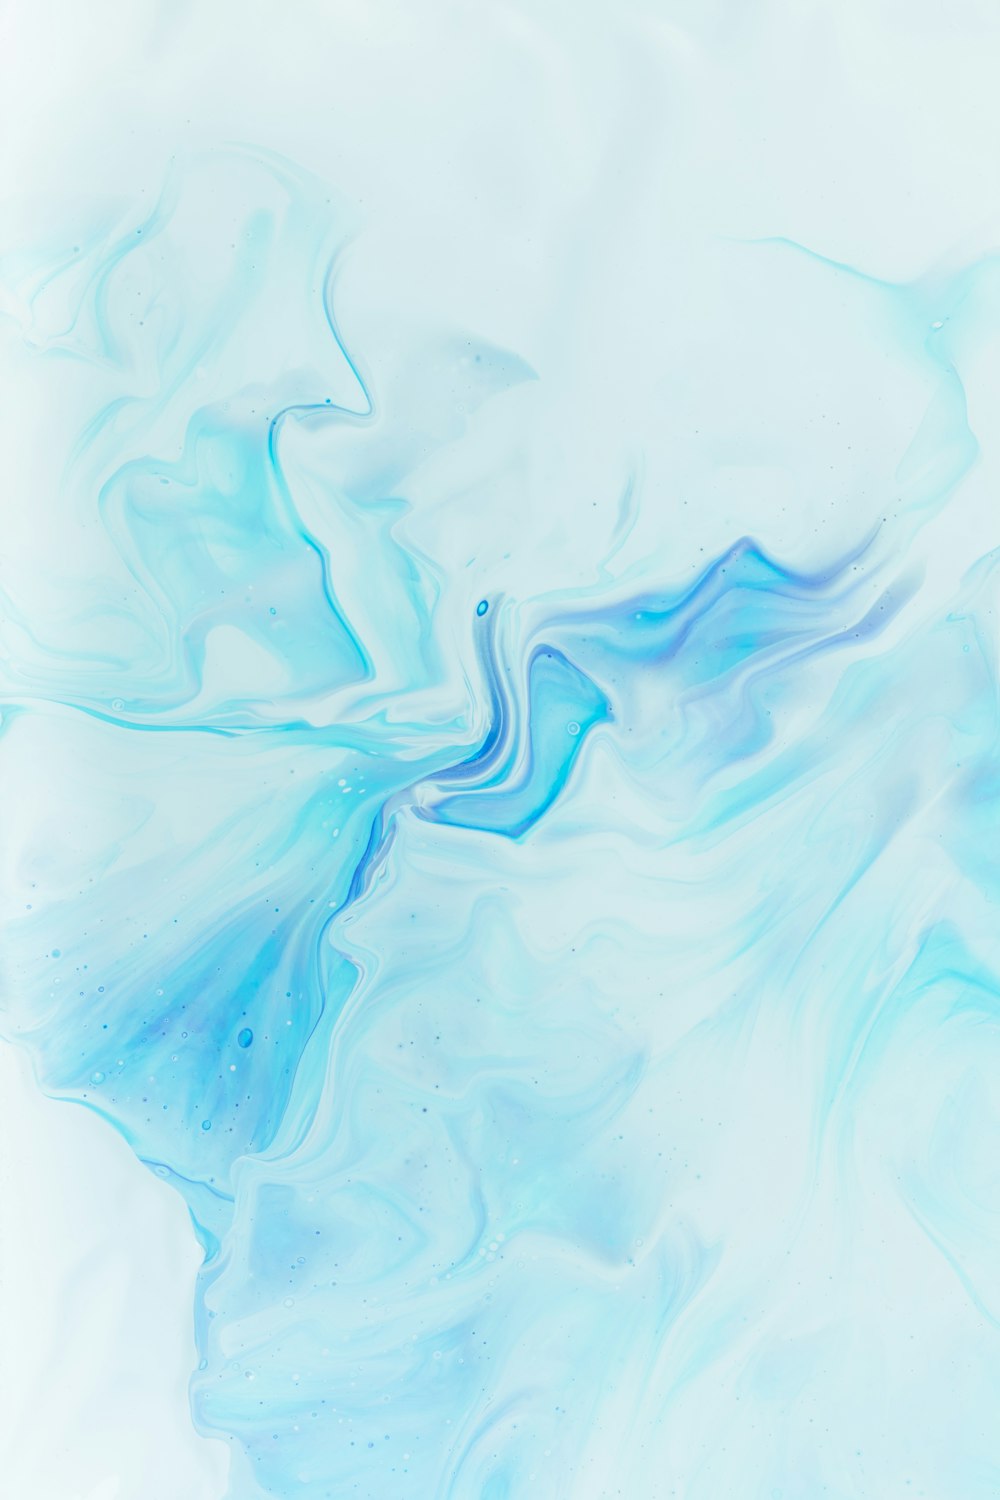 30k+ Pastel Blue Pictures | Download Free Images on Unsplash